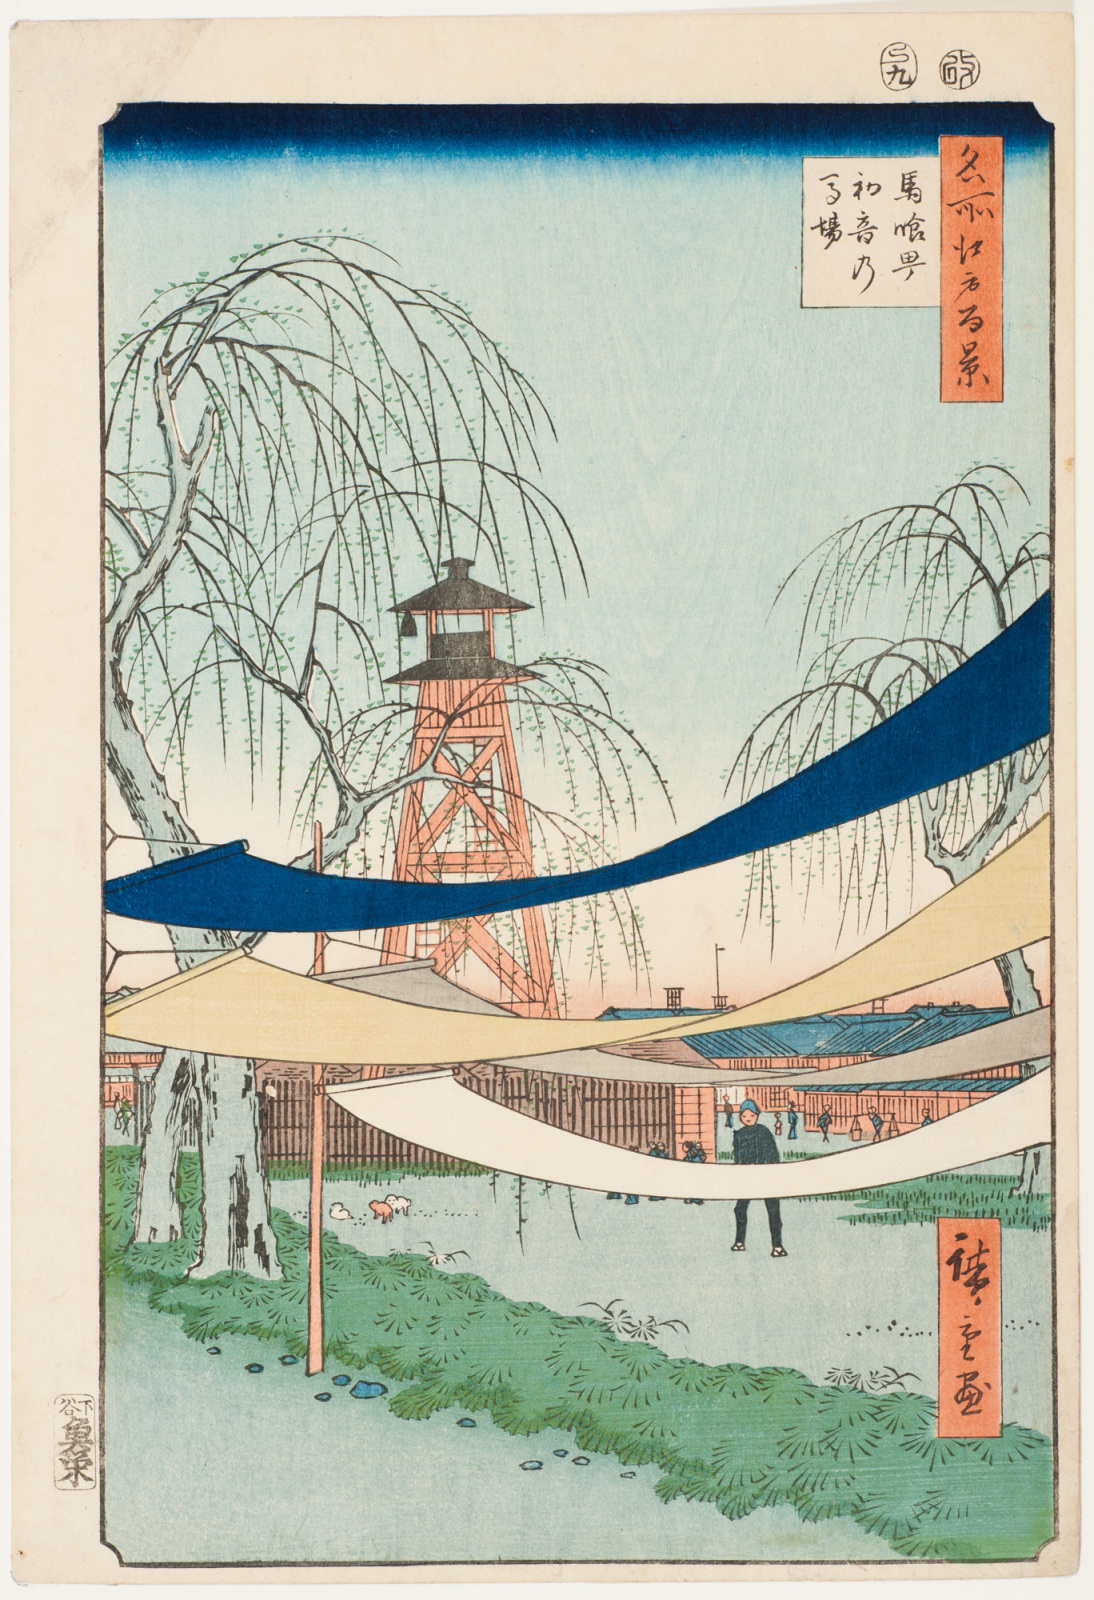 初音骑马场 by 安藤广重  - 1856 - 34 x 22.9 cm 辛辛那提美术馆